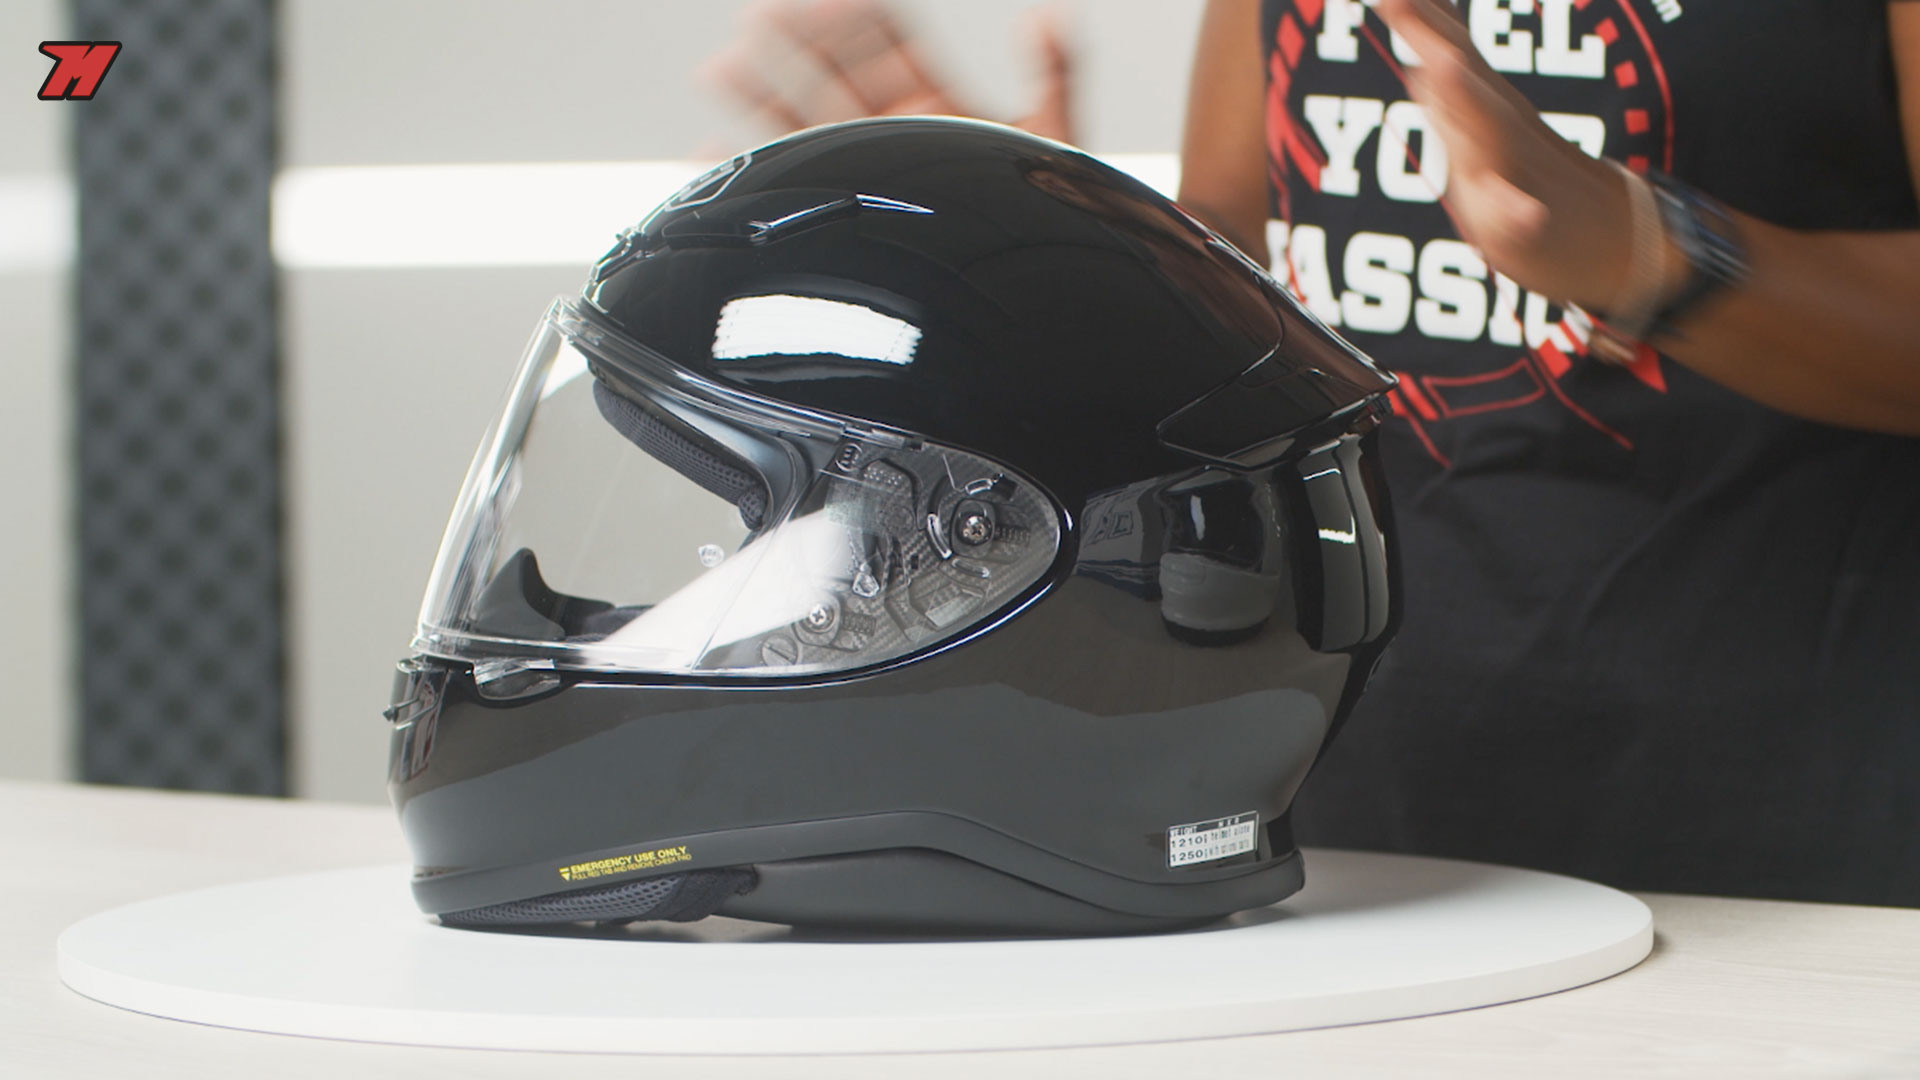 empeñar Correa Típico Top 9 cascos de moto para mujer, ¿cuál es el mejor? · Motocard